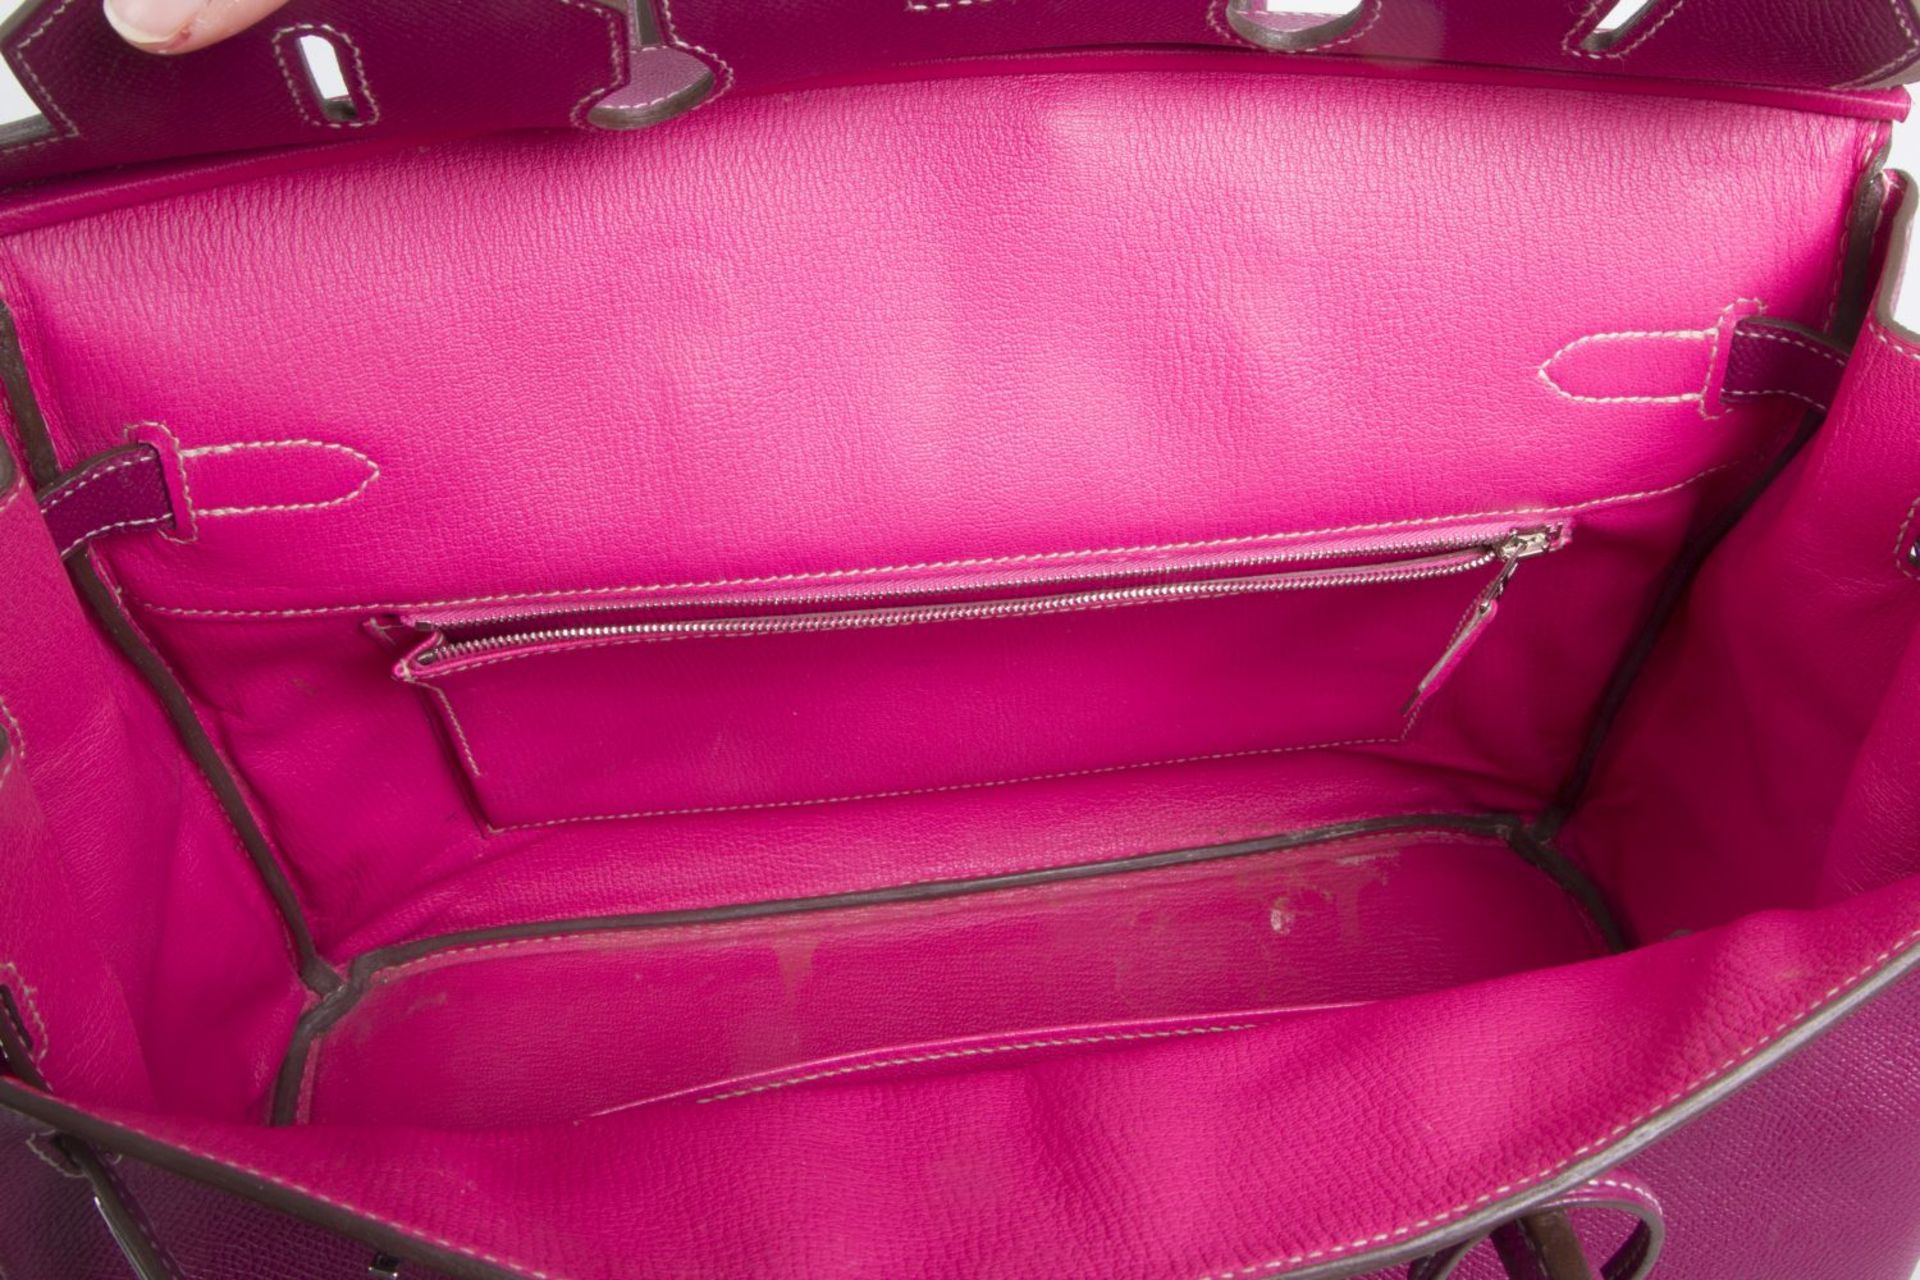 Hermès ''Birkin Bag 35'' Kalbsleder in Fuchsia mit weißer Naht. Beschläge mit Palladiumauflage. Trap - Bild 5 aus 10